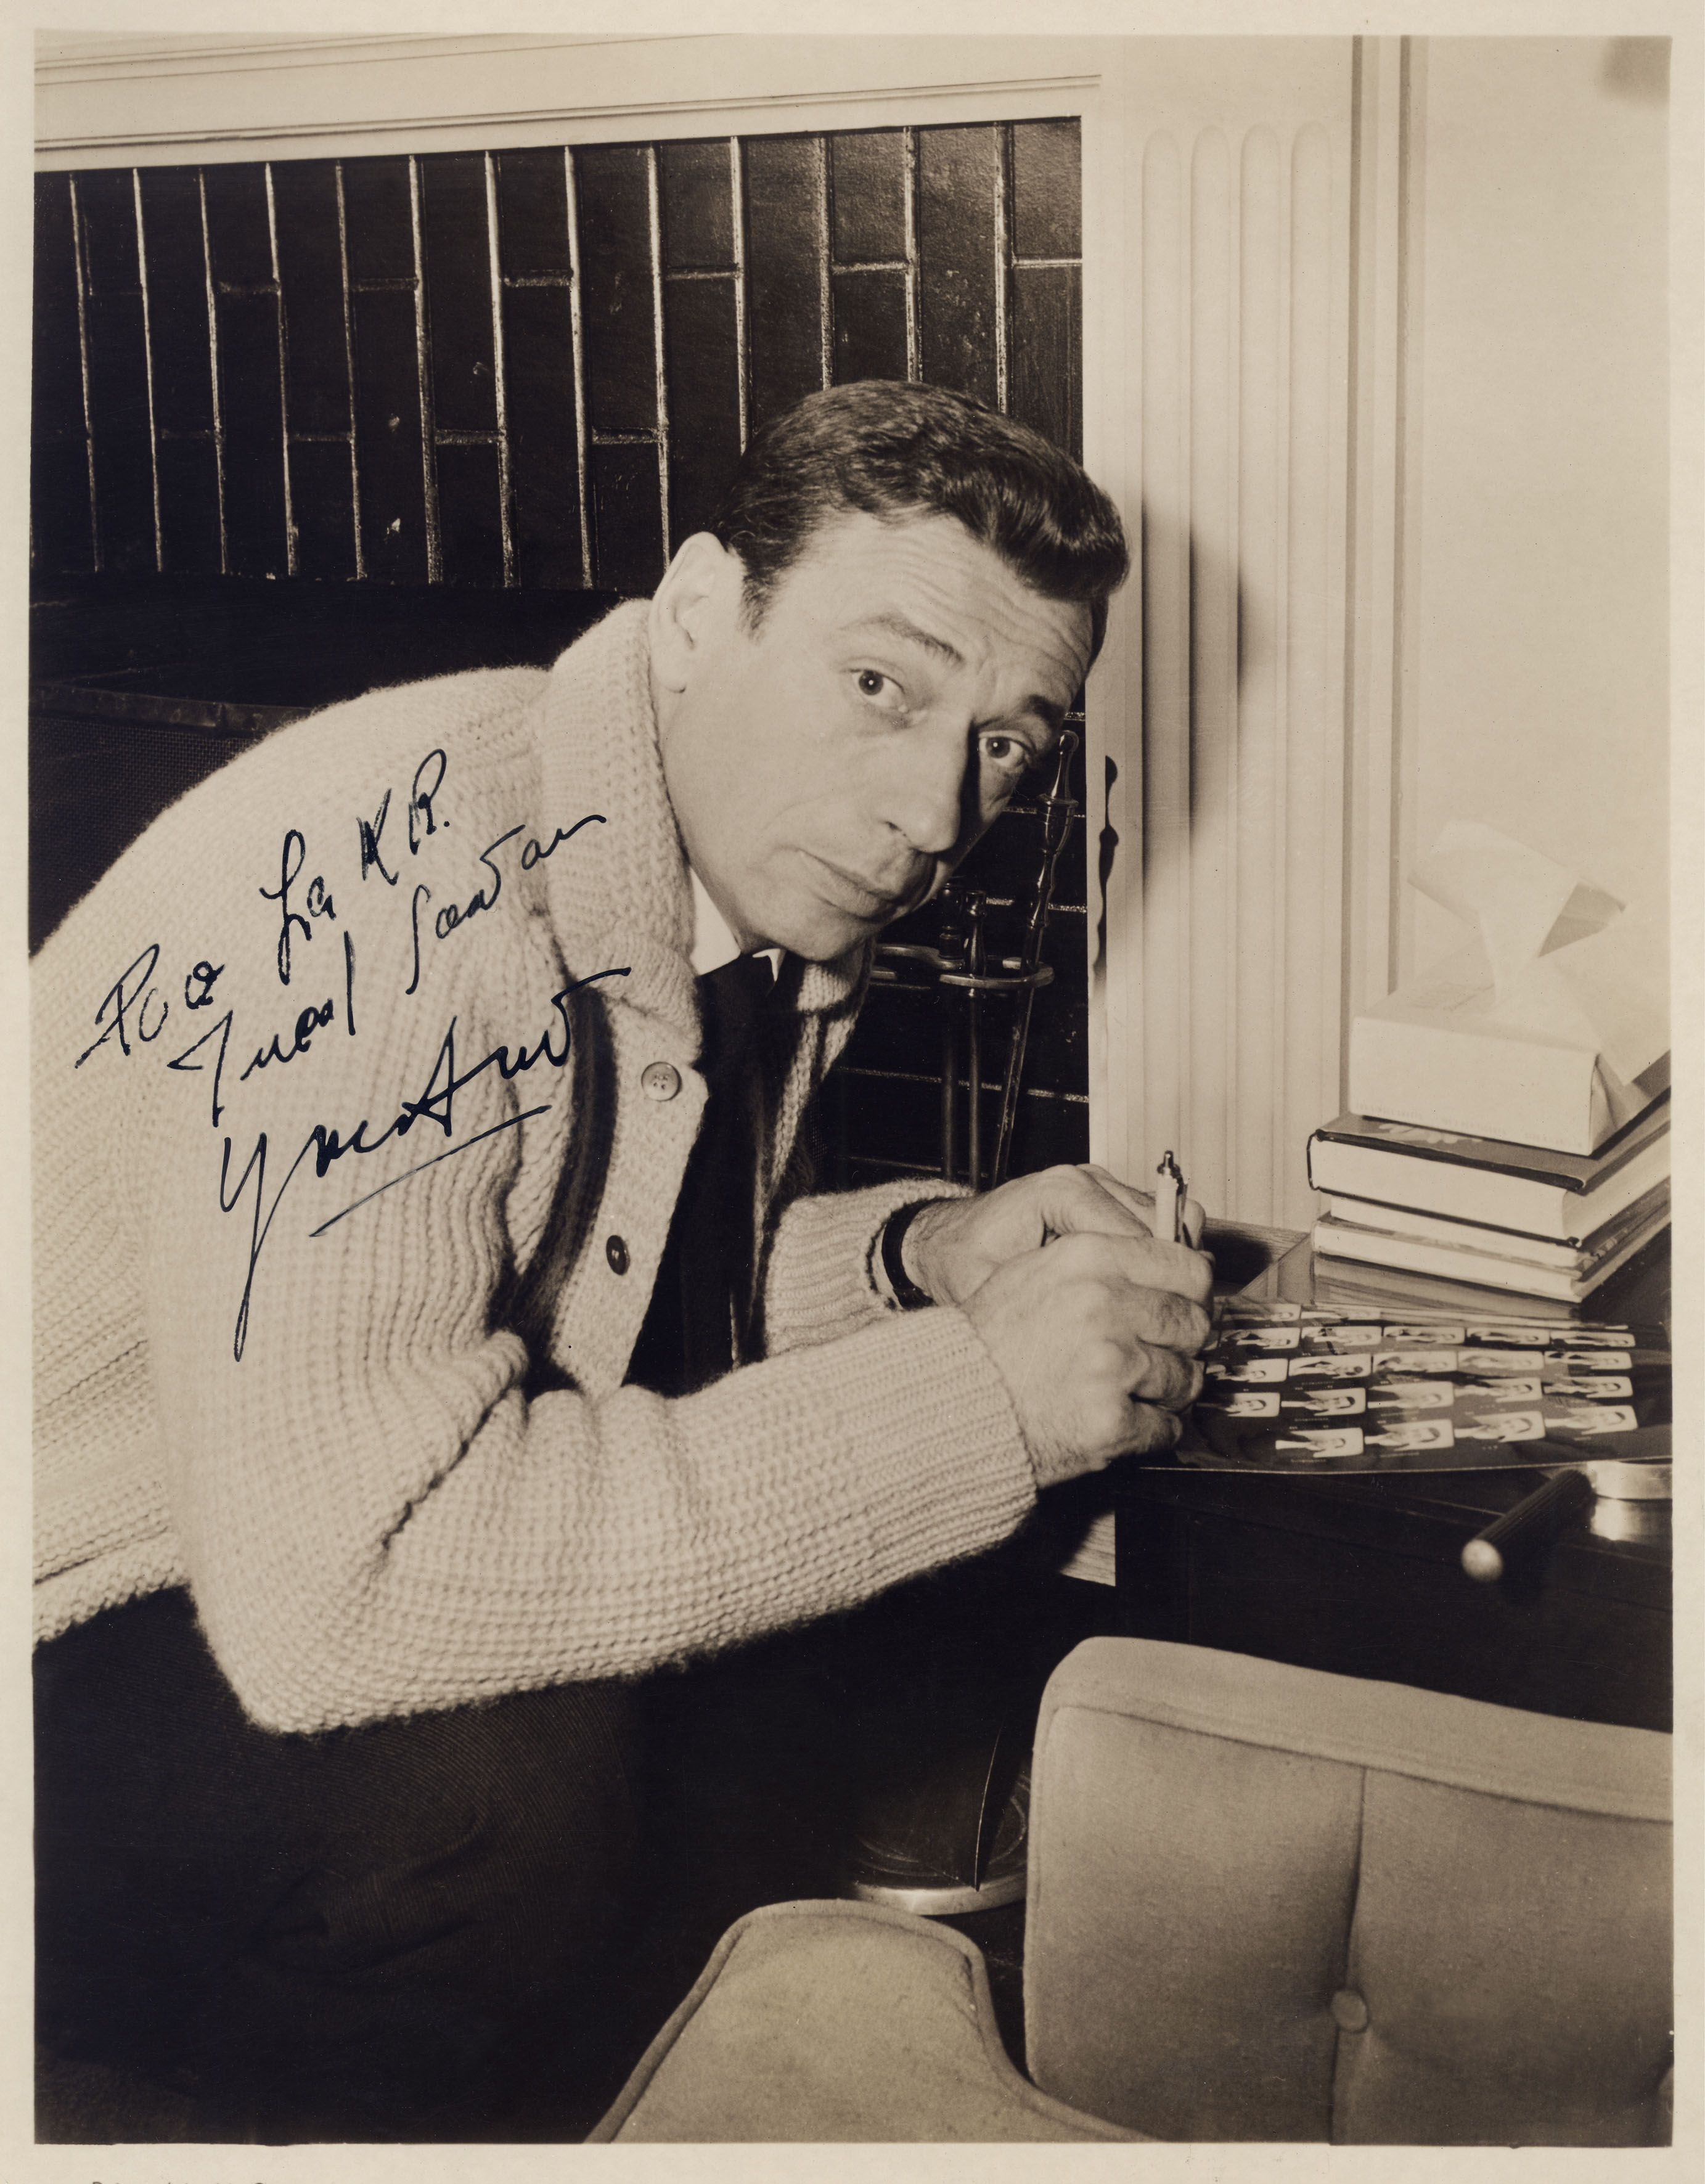 Yves Montand immortalato nel 1960 mentre firma autografi, popolarissimo per aver interpretato "Facciamo l'amore" al fianco della star Marilyn Monroe